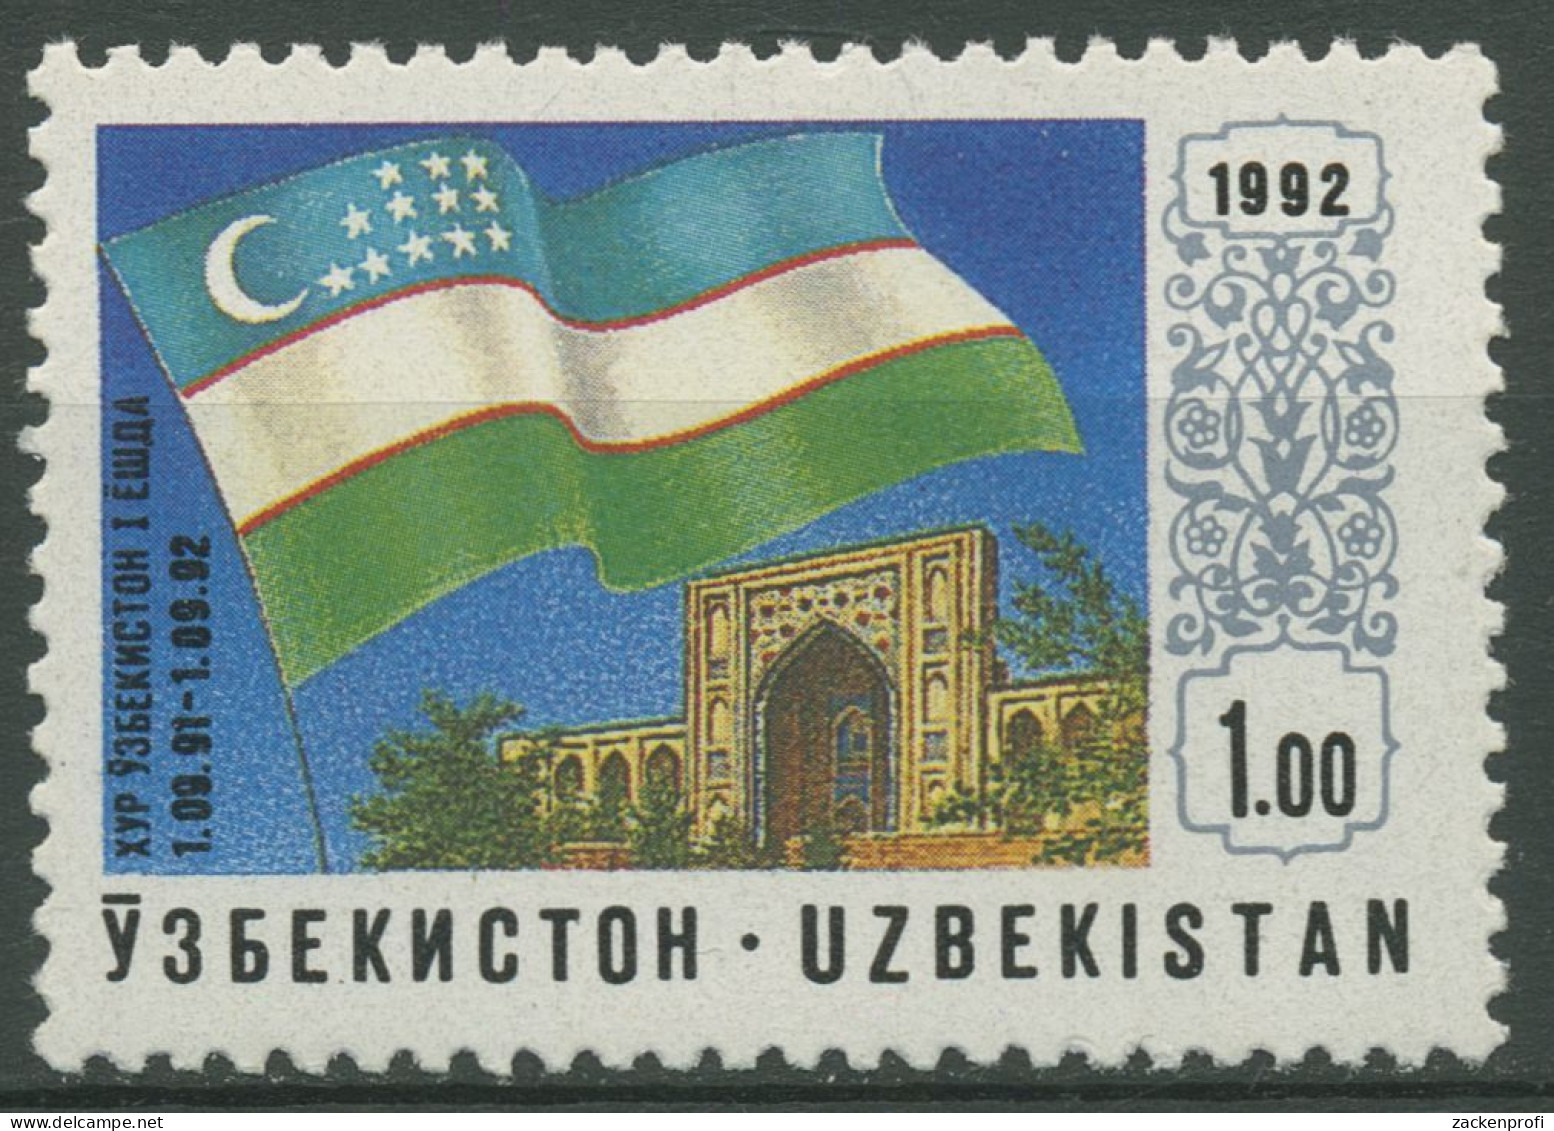 Usbekistan 1992 Unabhängigkeit Flagge 3 Postfrisch - Usbekistan